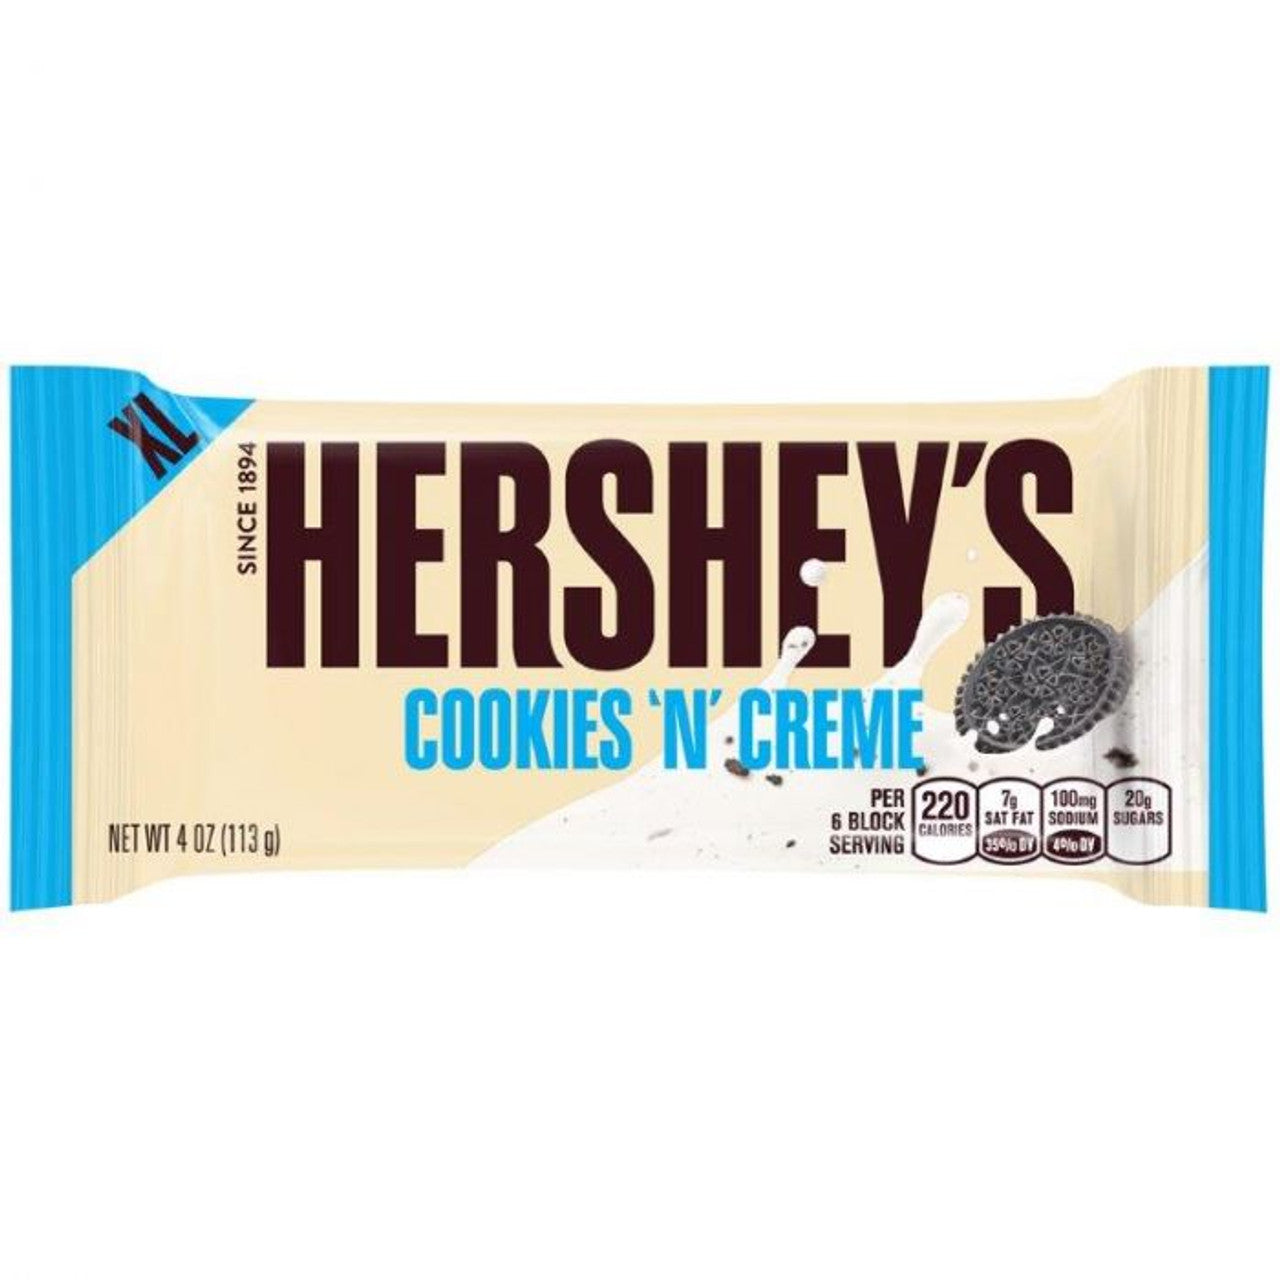 Hershey's Cookies 'n' Creme XL 113g